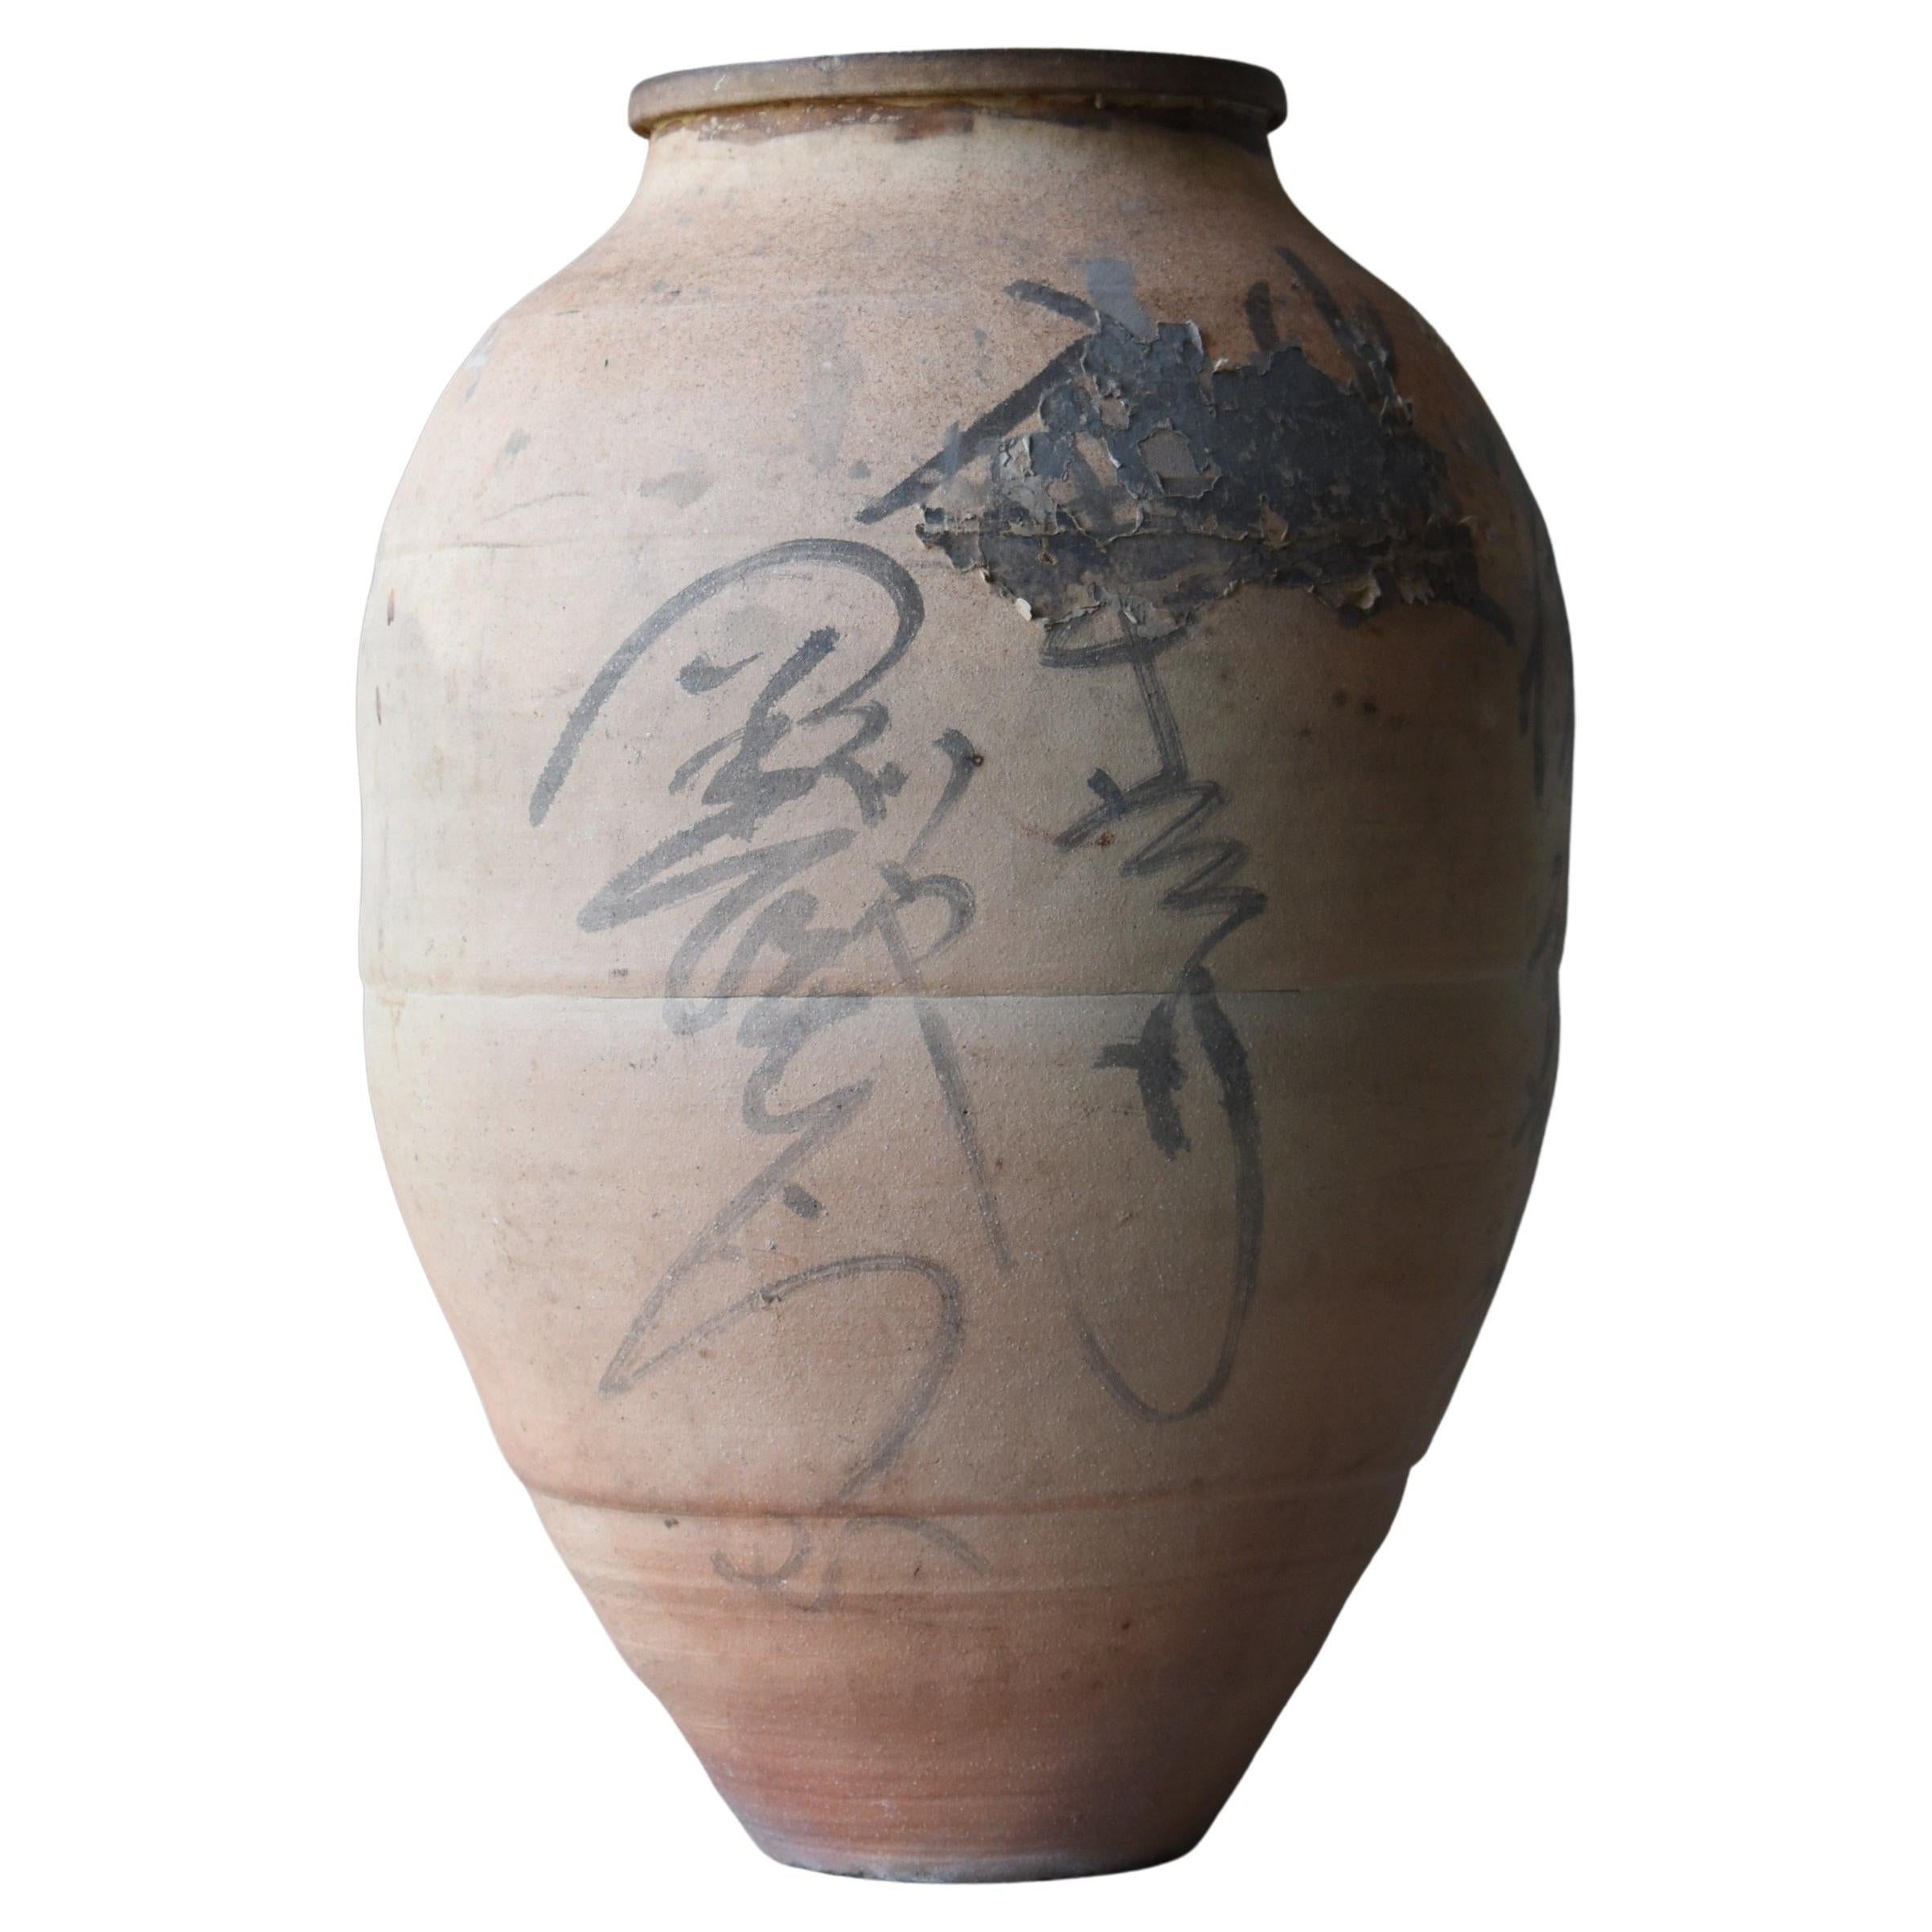 Japanese Old Pottery 1860s-1900s /Antique Tsubo Vessel Jar Flower Vase Wabisabi